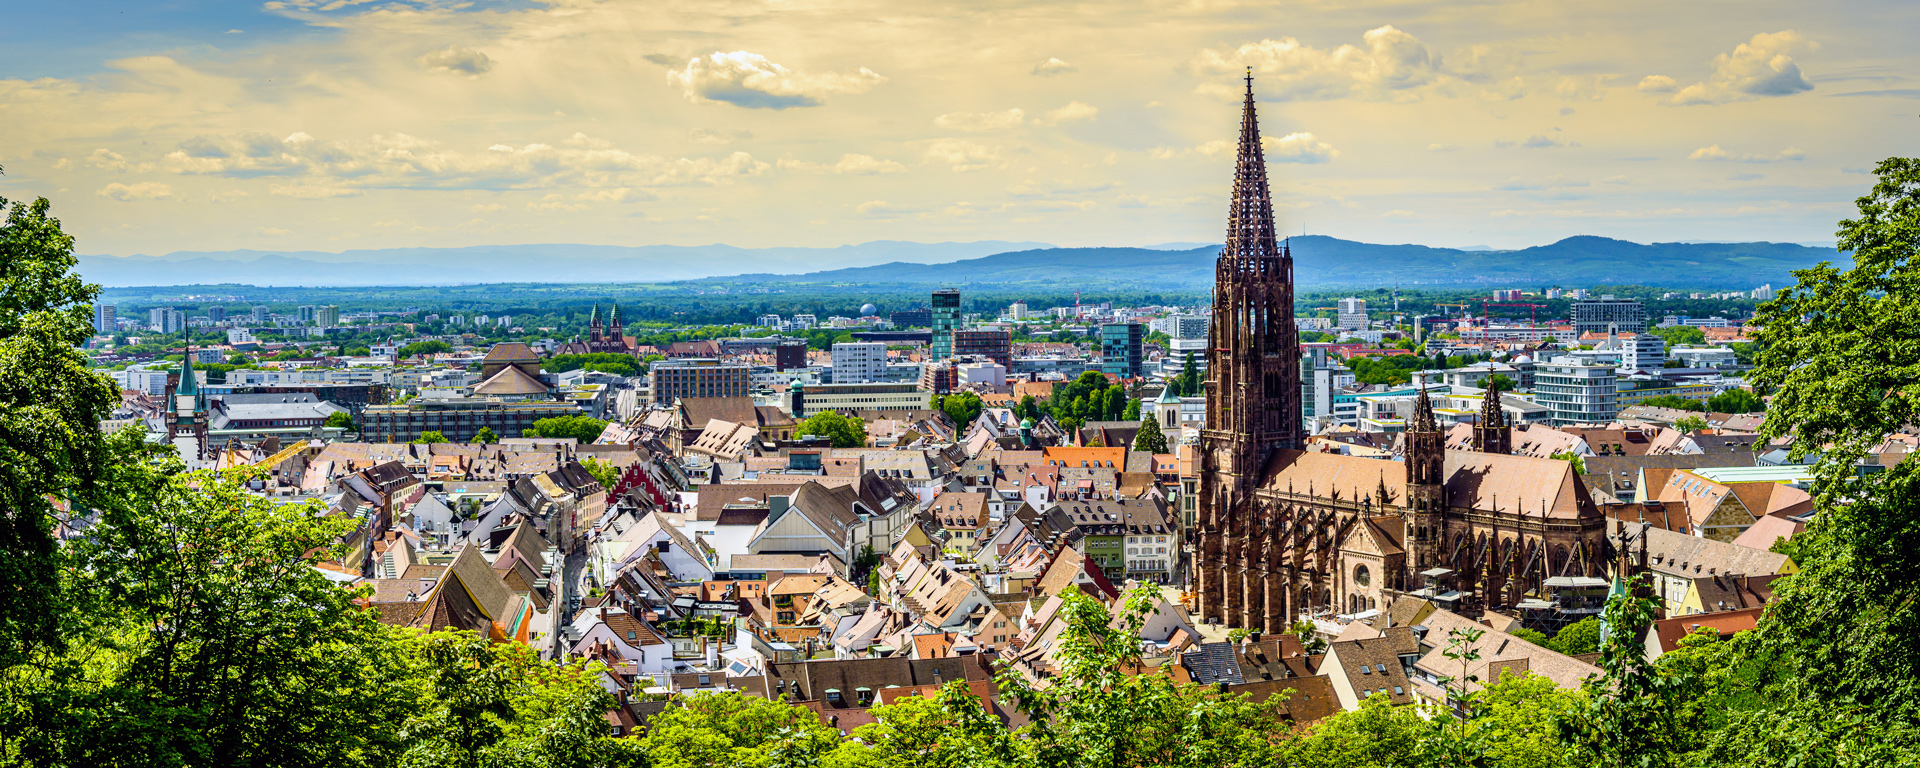 Blick von oben auf den Freiburger Münster und die Altstadt in Freiburg im Breisgau